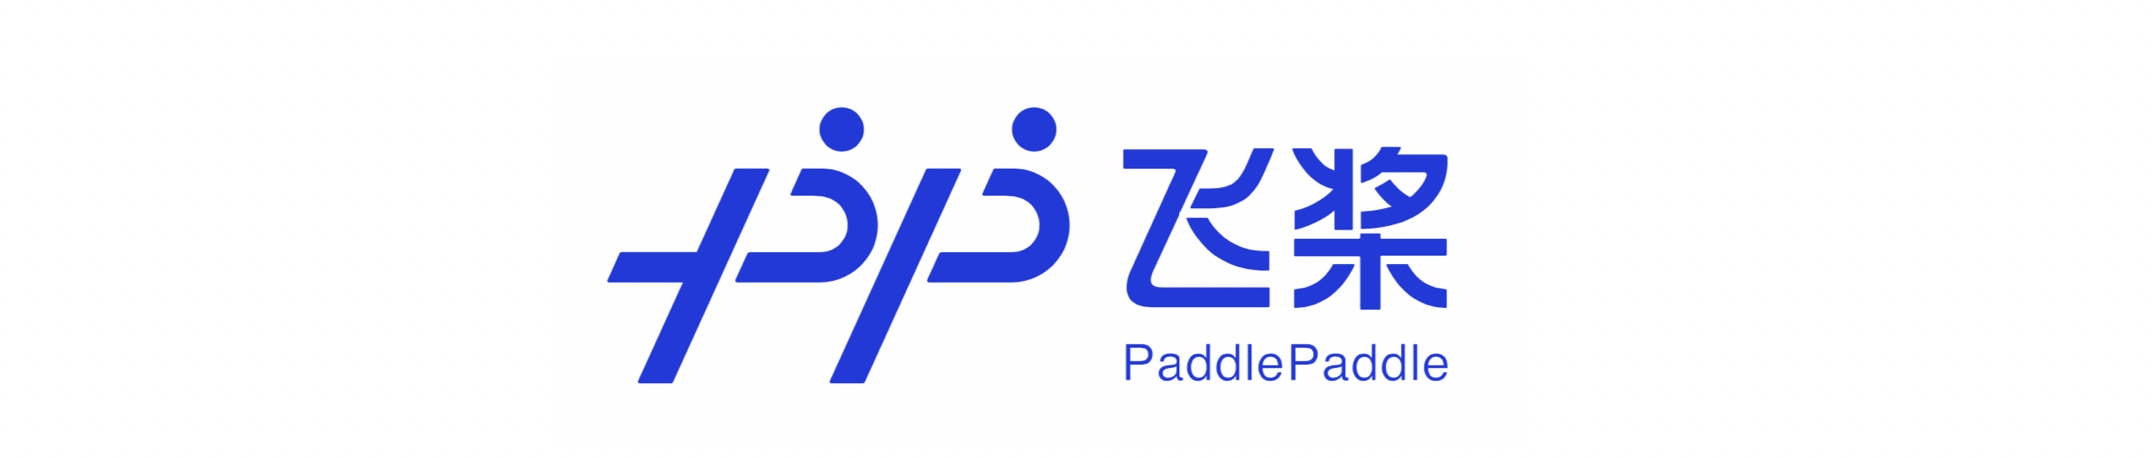 PaddlePaddle Logótipo